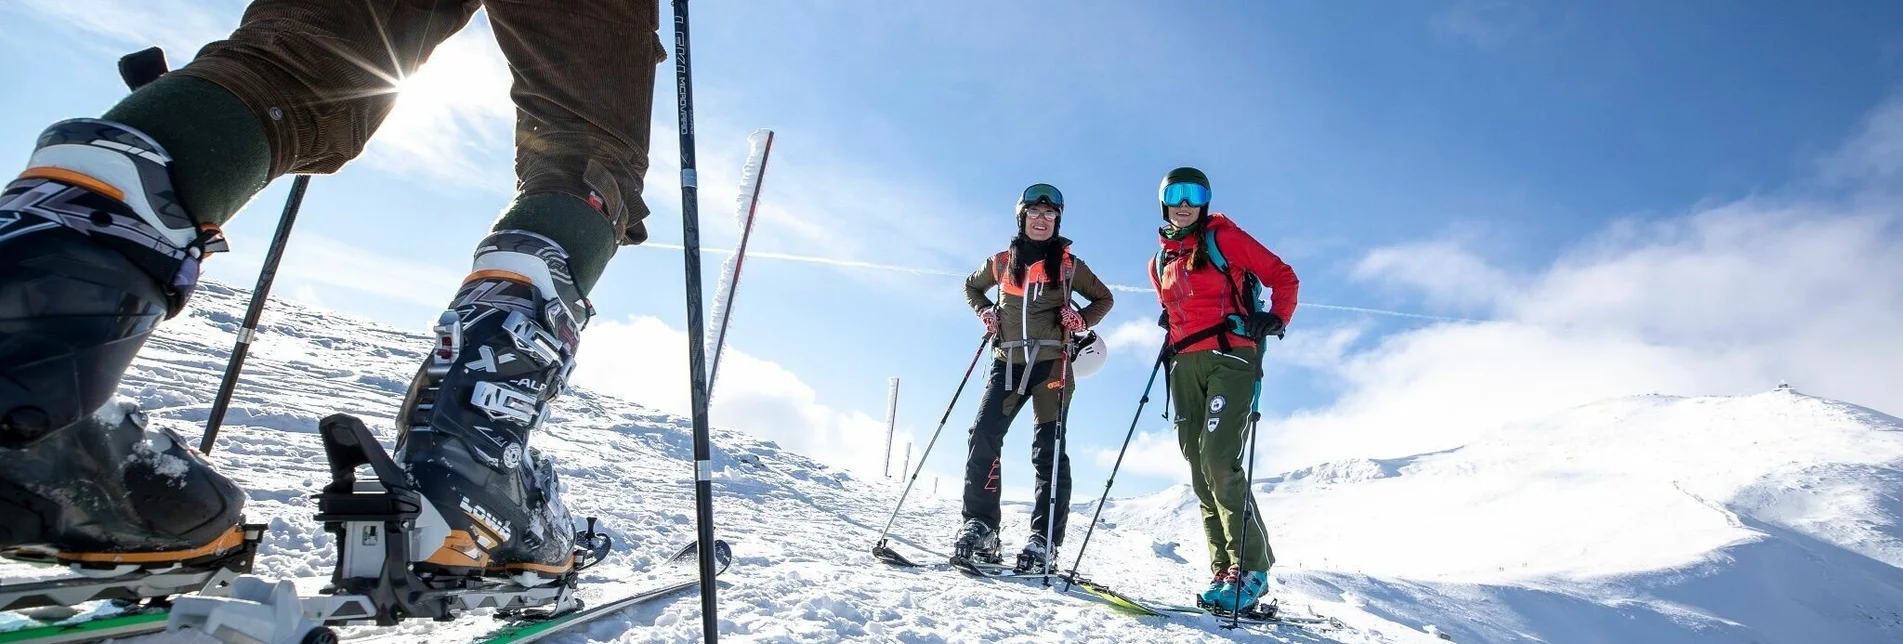 Ski Touring Frauenalpe over the ridge - Touren-Impression #1 | © Tourismusverband Region Murau